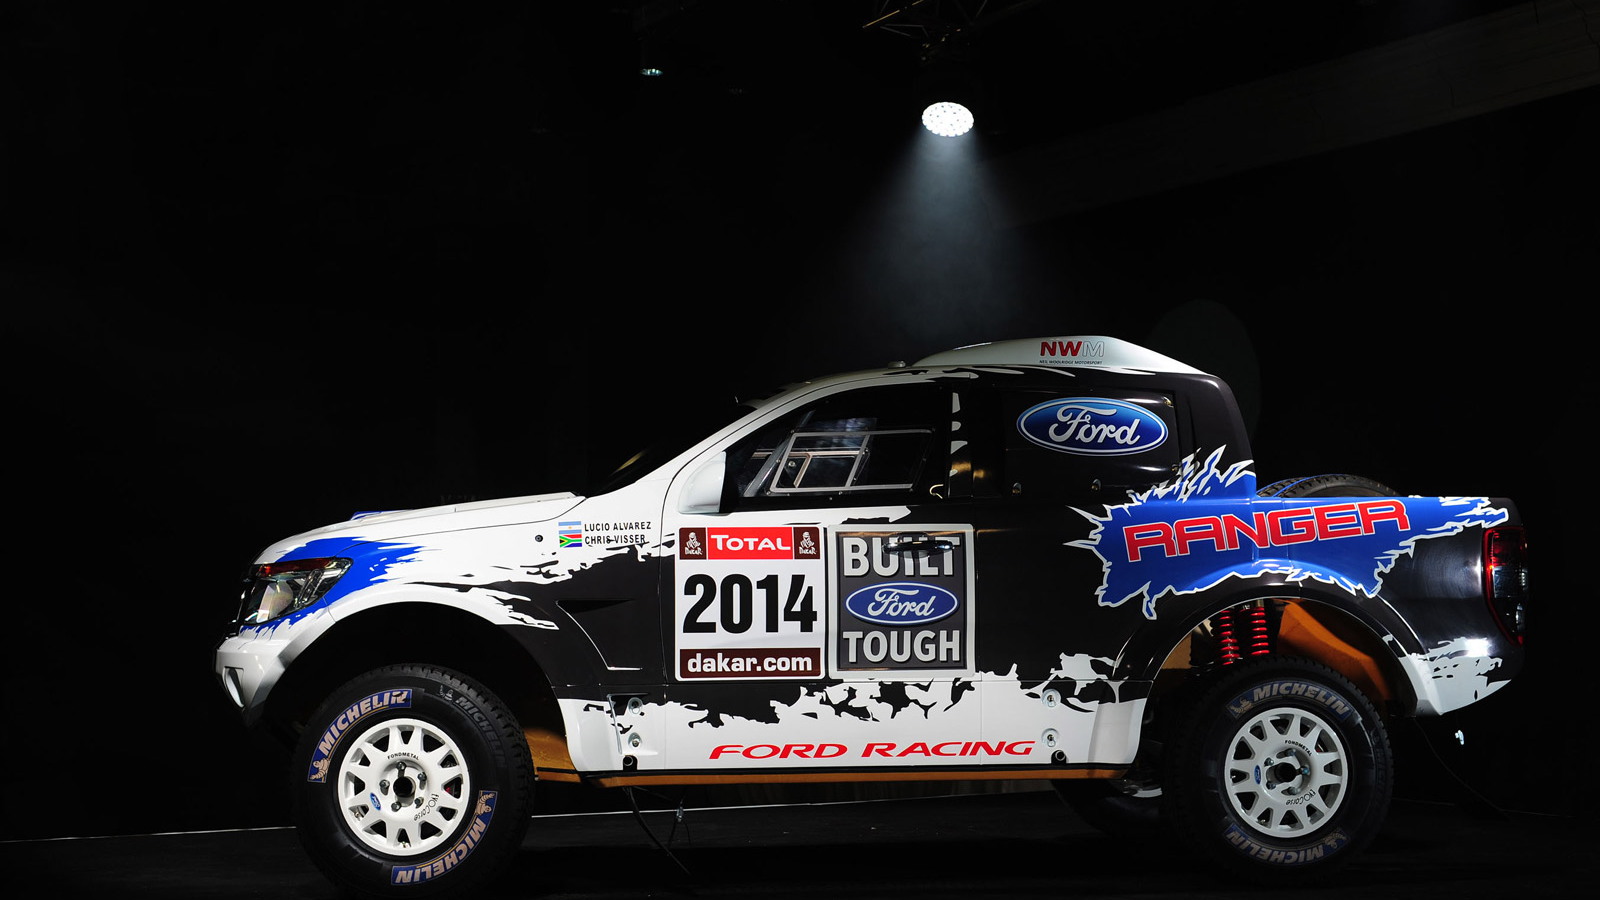 Custom Ford Ranger to be entered in 2014 Dakar Rally